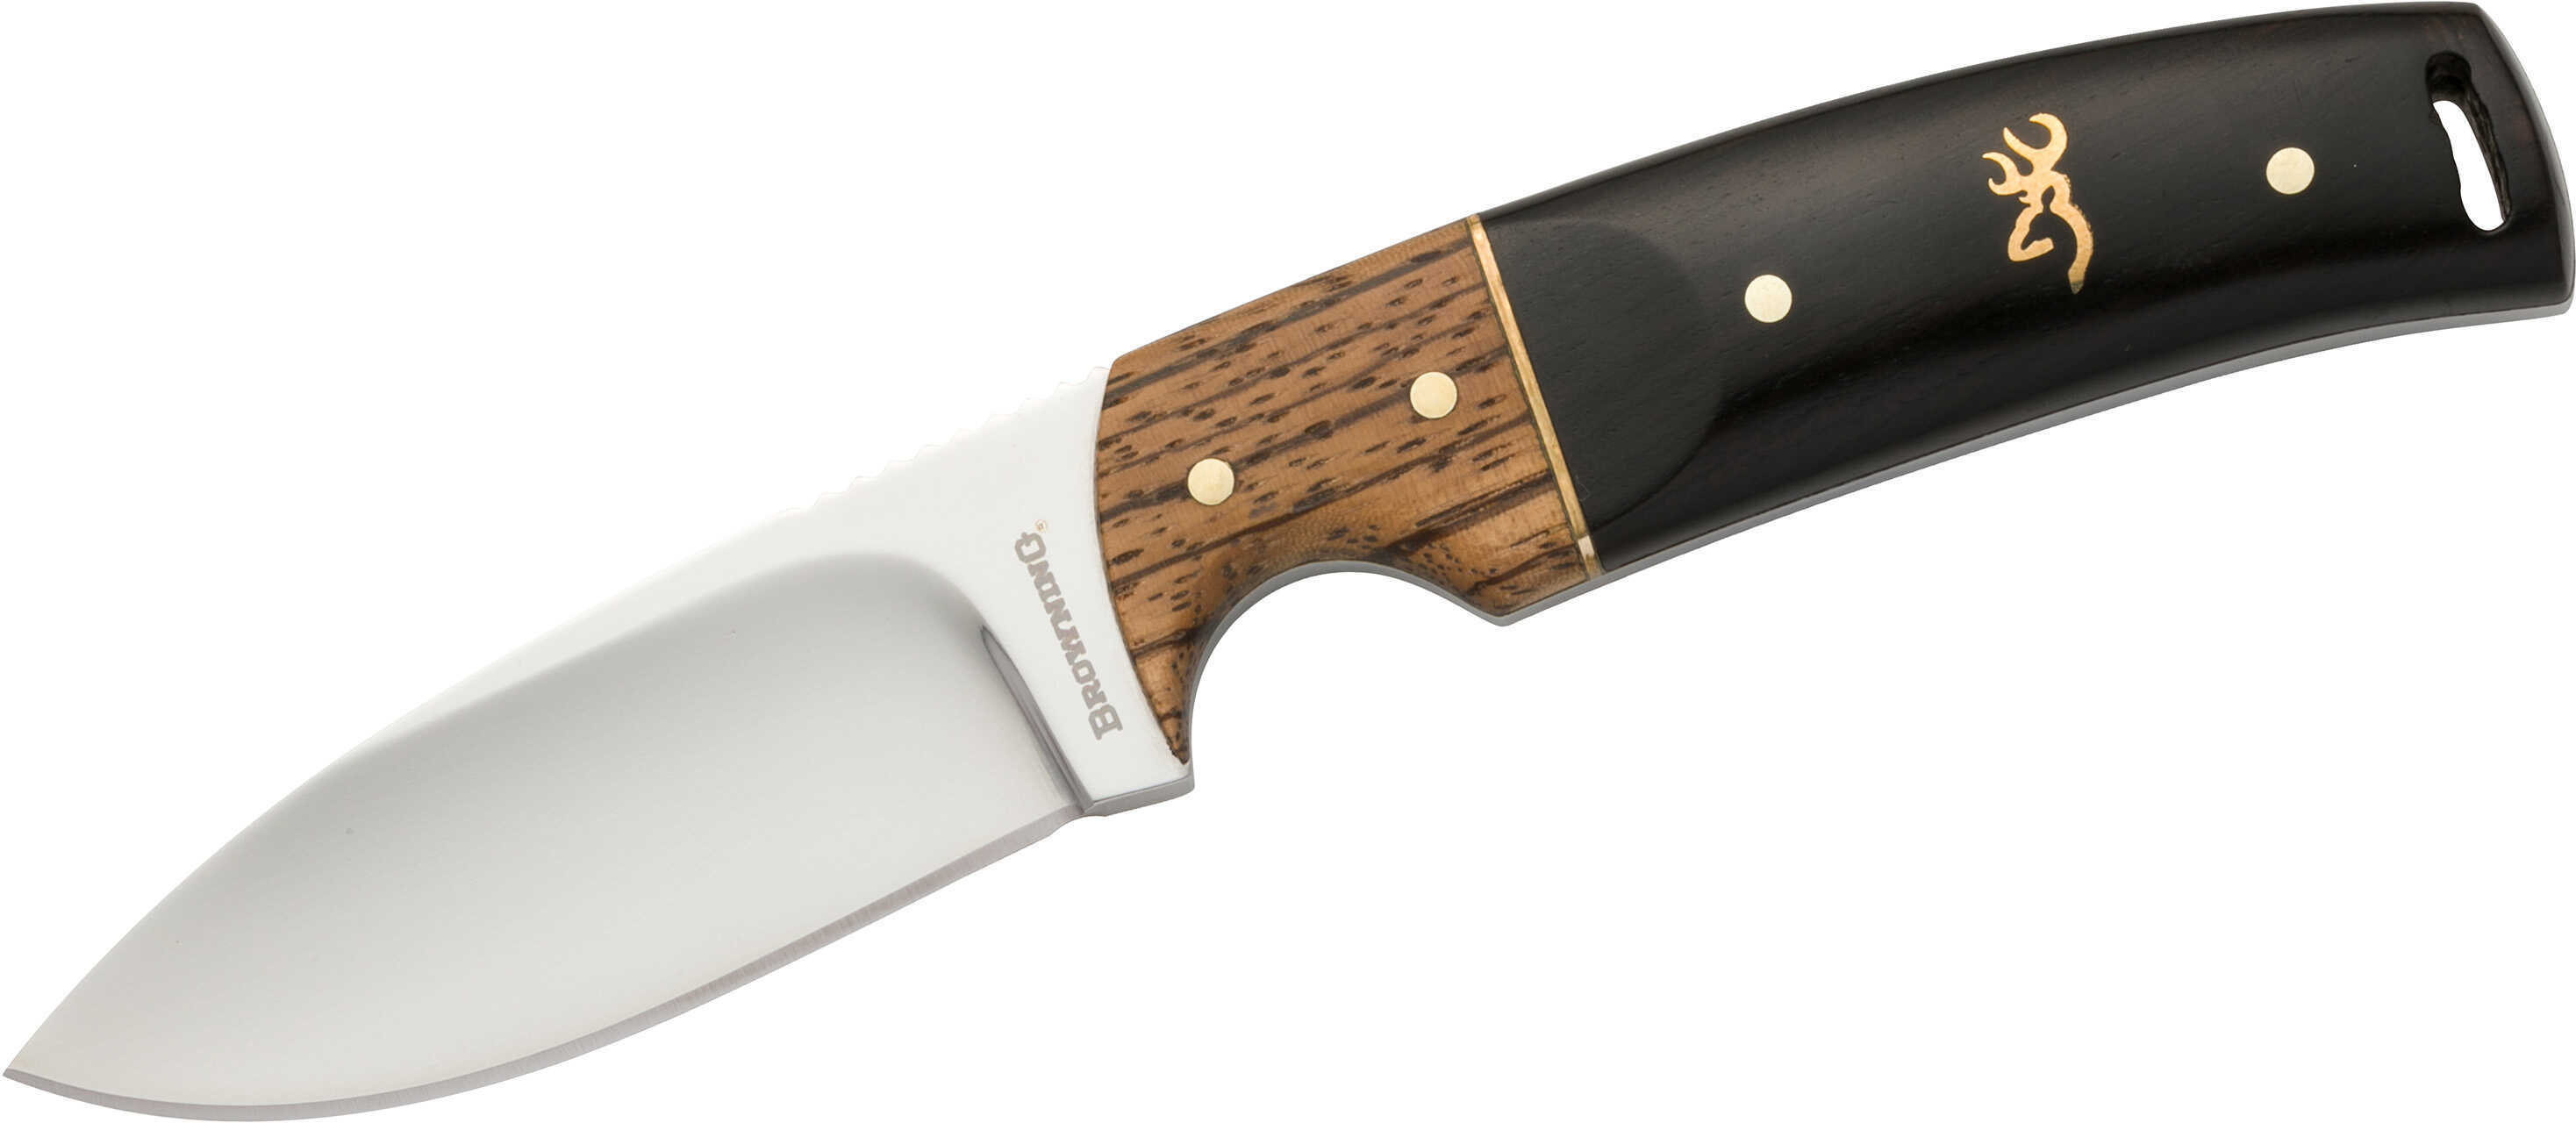 Brn 3220271 BKMK Hunter Fixed Knife